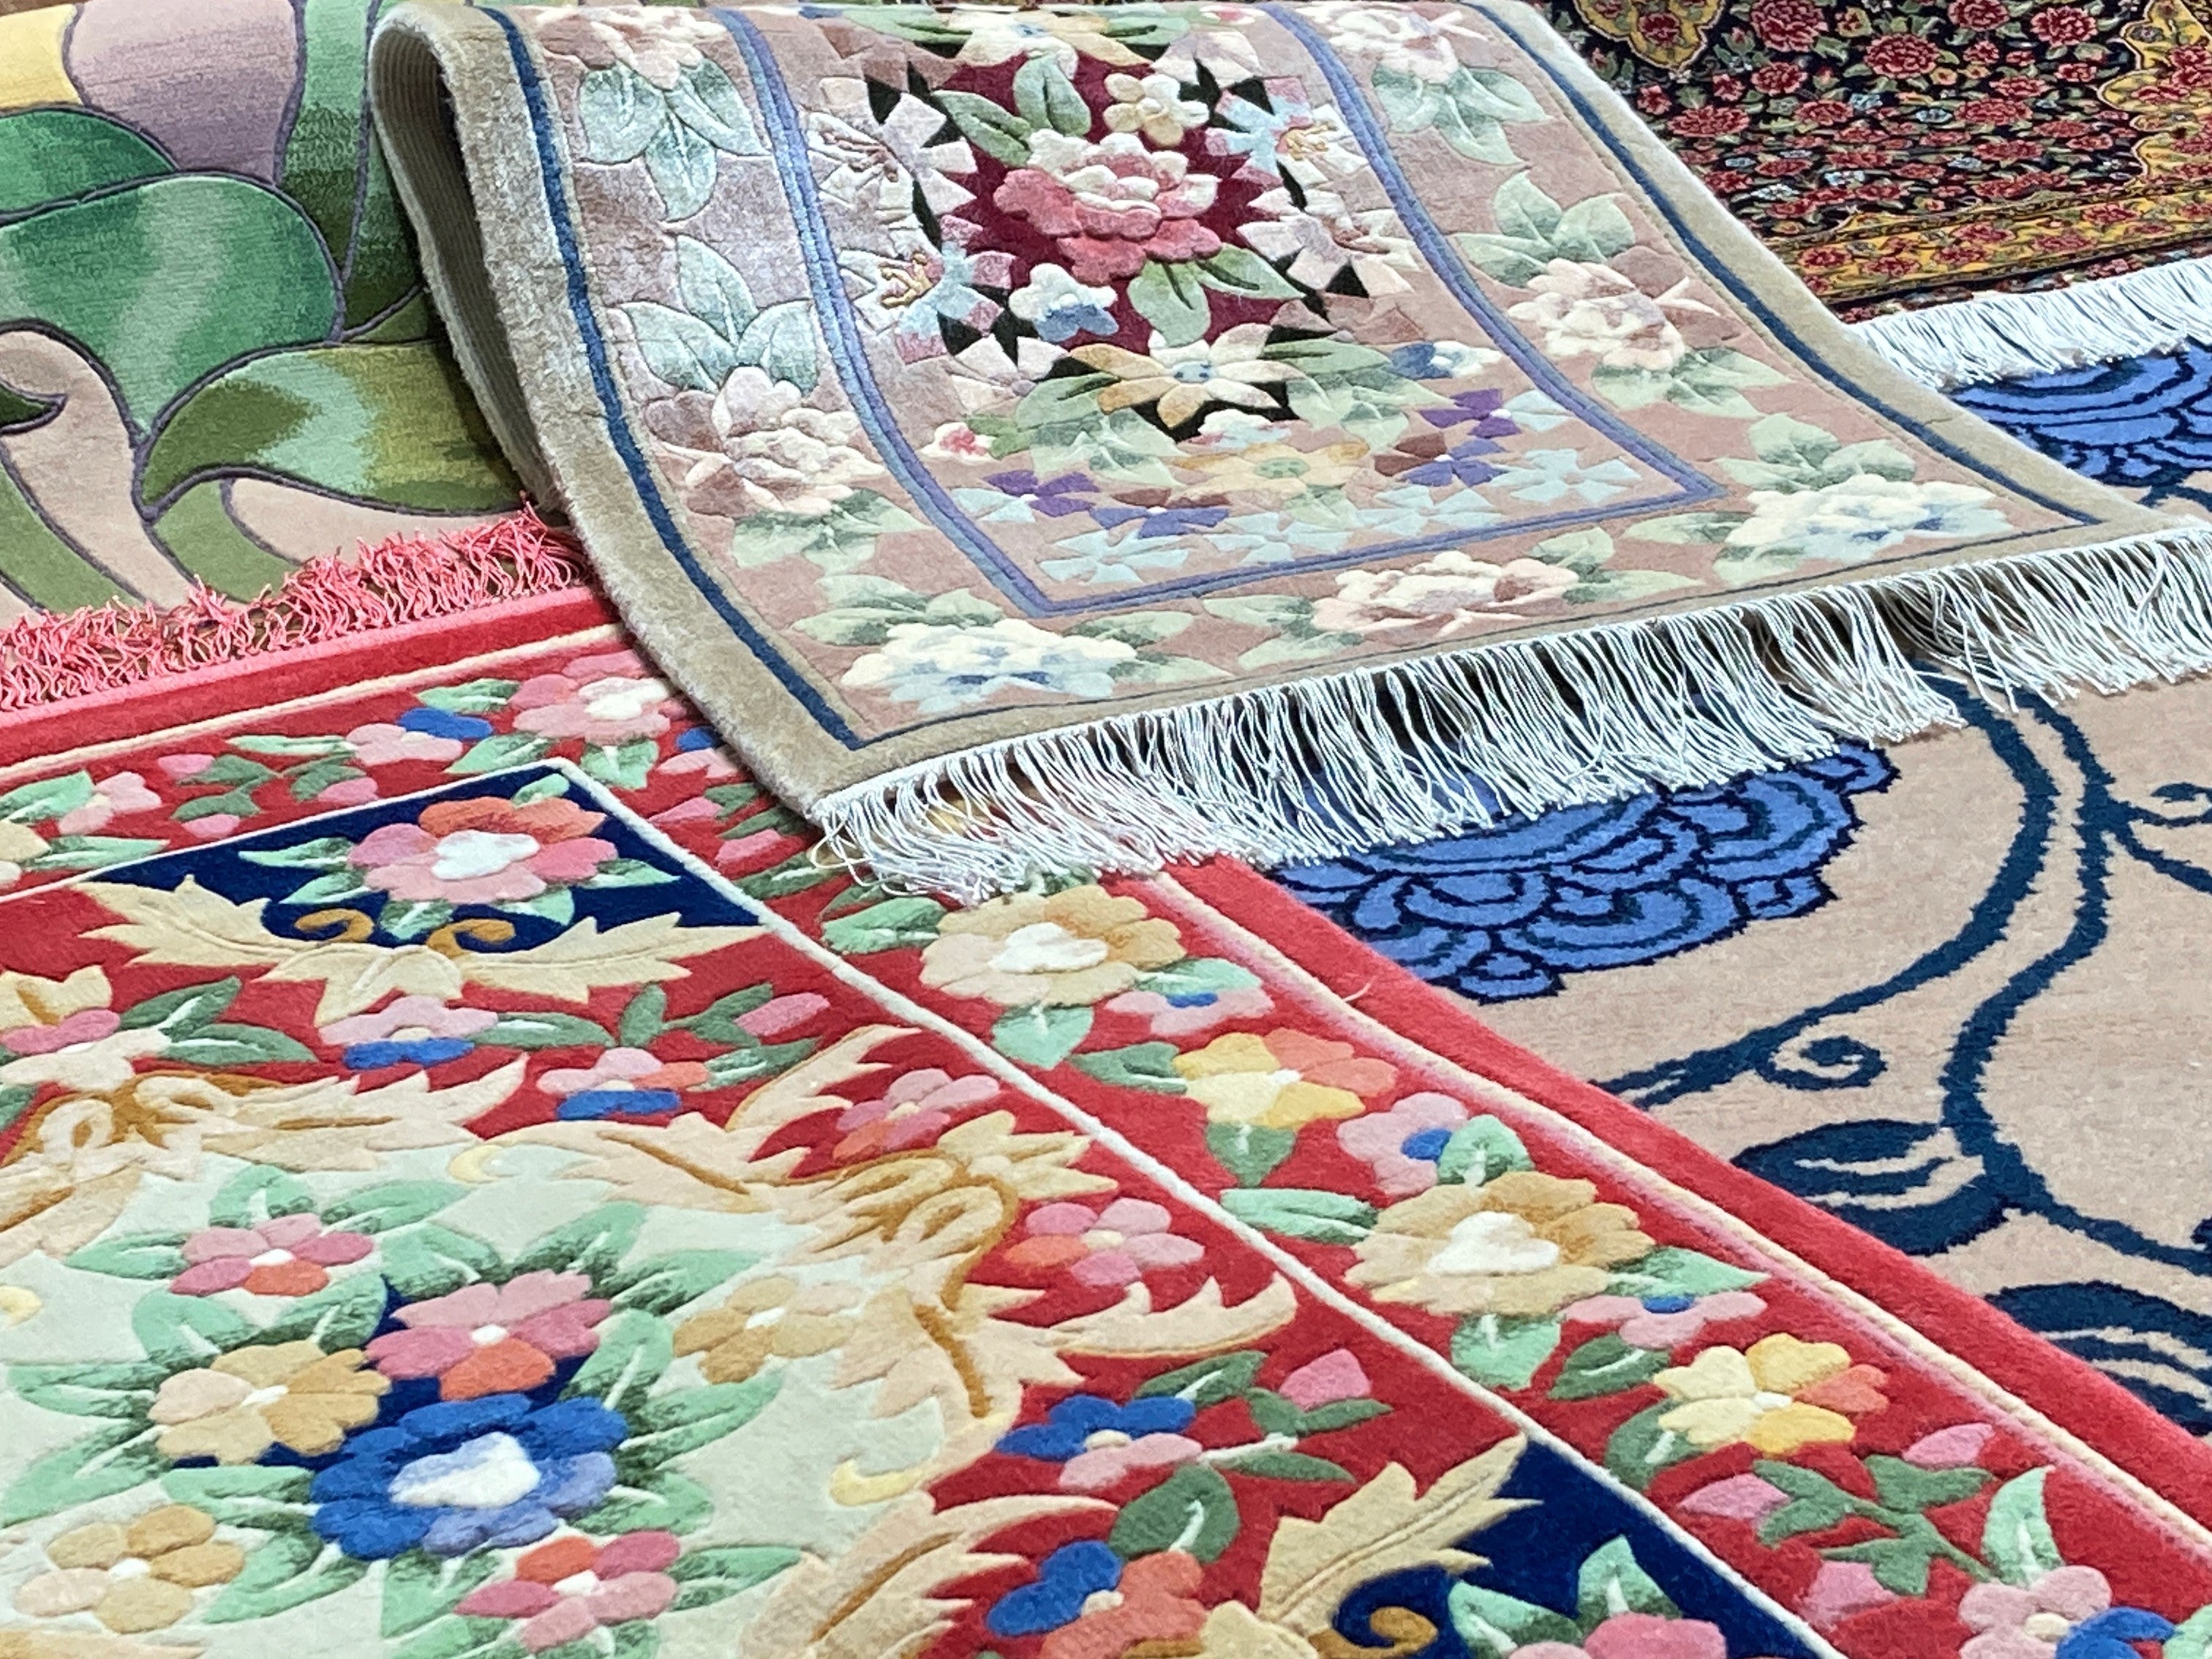 ロングセラー絨毯として根強い人気の「緞通」。